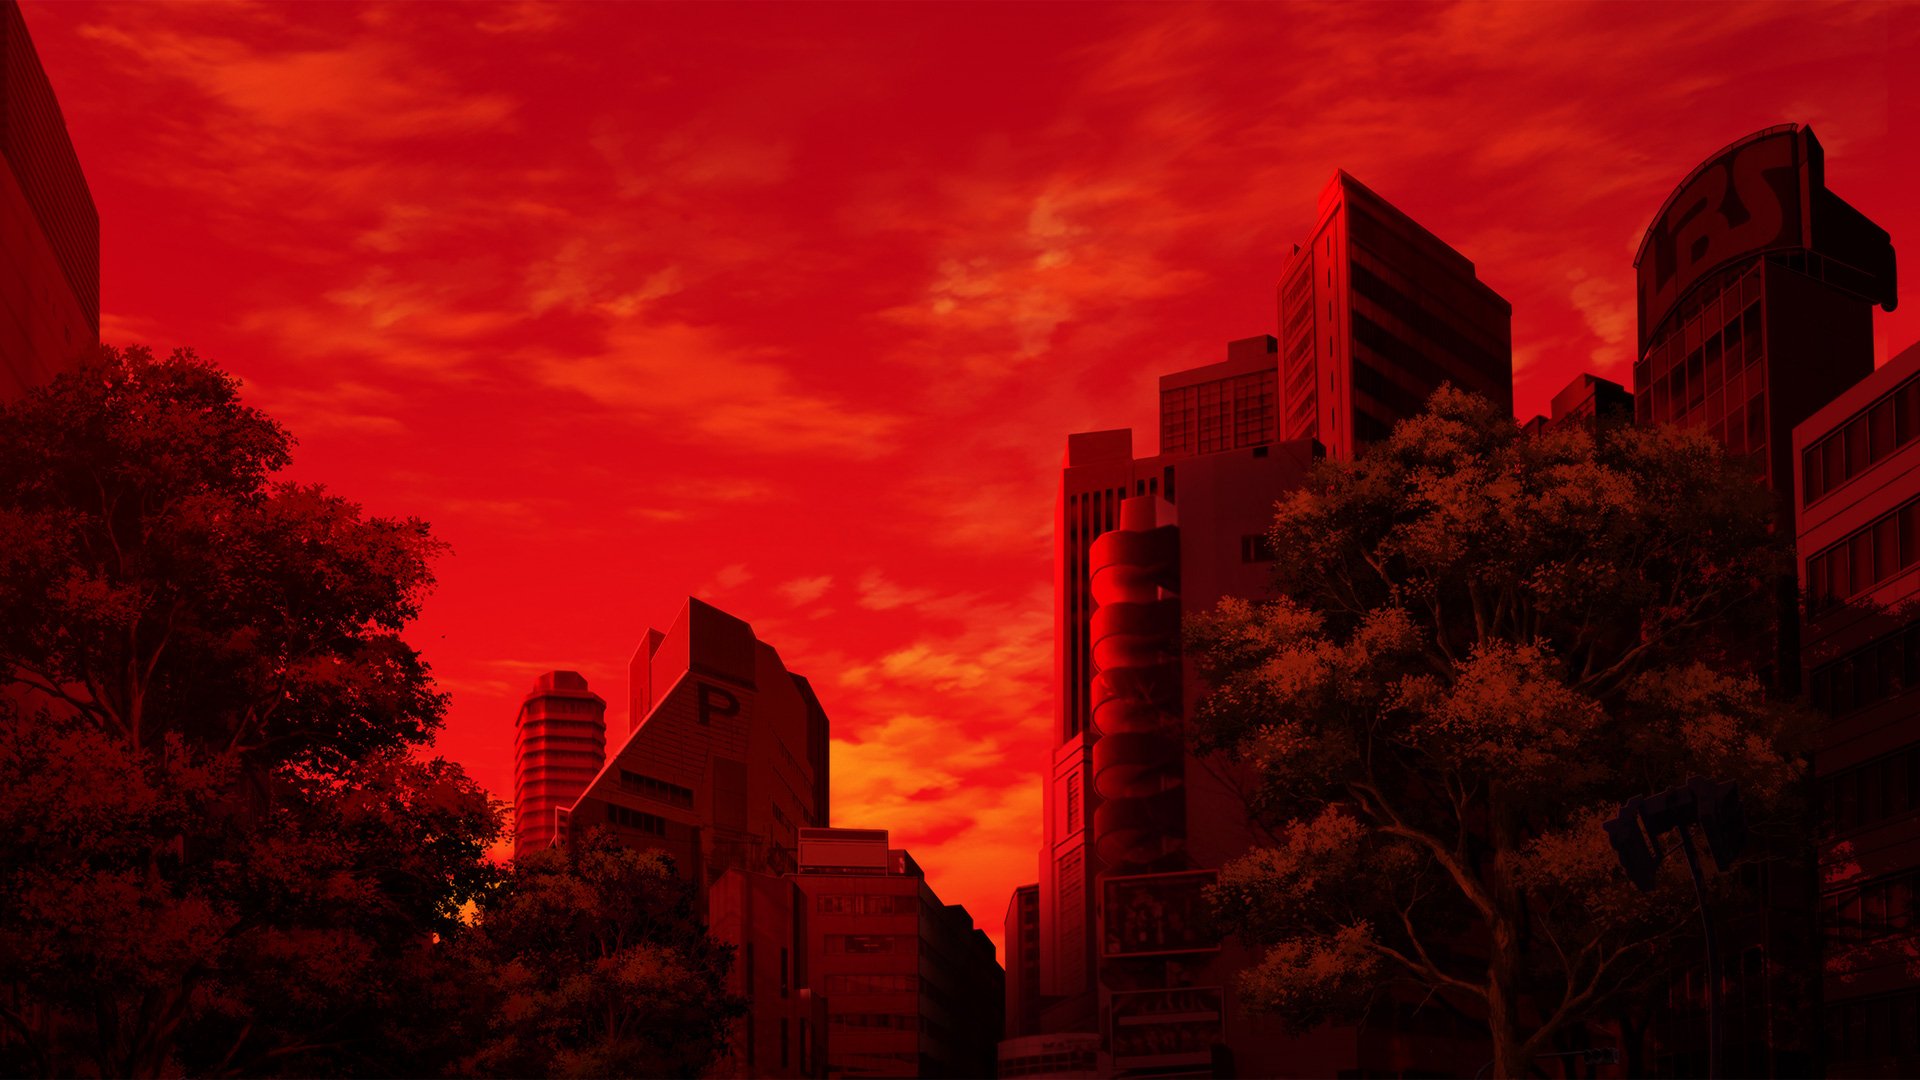 Hãy thưởng thức bức hình wallpaper Trickster Anime với các yếu tố màu đỏ đậm chất lừa dối. Với kỹ thuật vẽ tuyệt vời, đây sẽ là bức hình nền tuyệt vời cho những ai yêu thích thế giới Anime đầy bí ẩn.